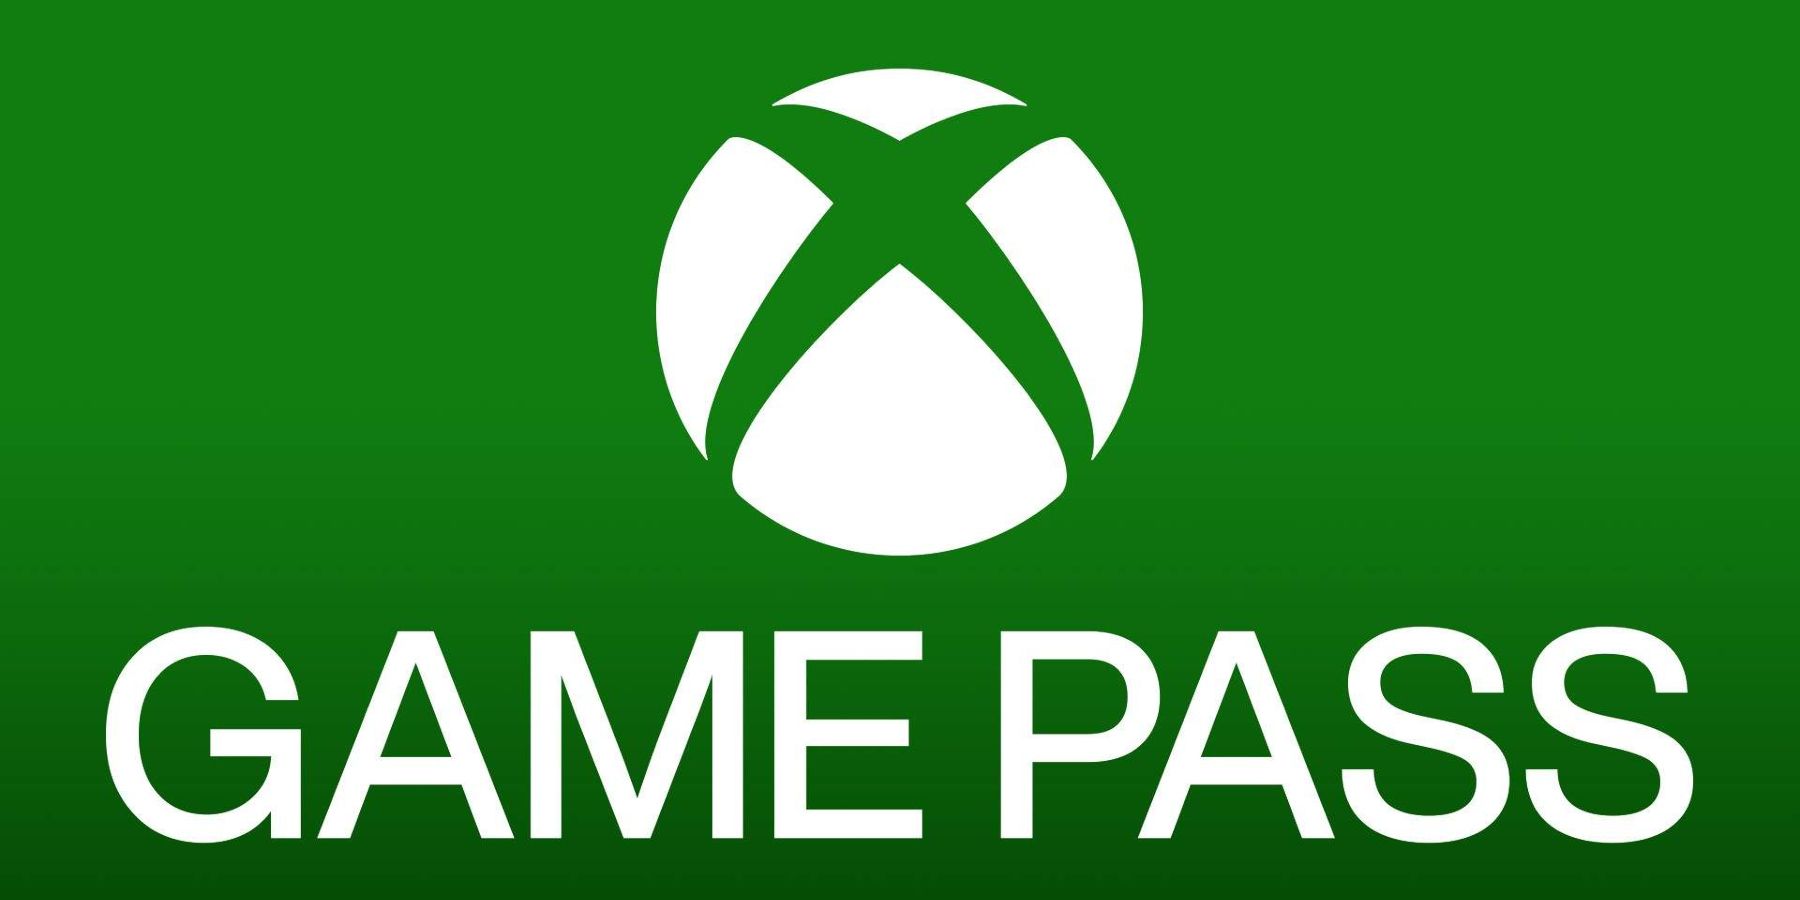 업데이트: Xbox Game Pass 가입자가 3천만 명에 달했다고 Take-Two CEO가 말했습니다.